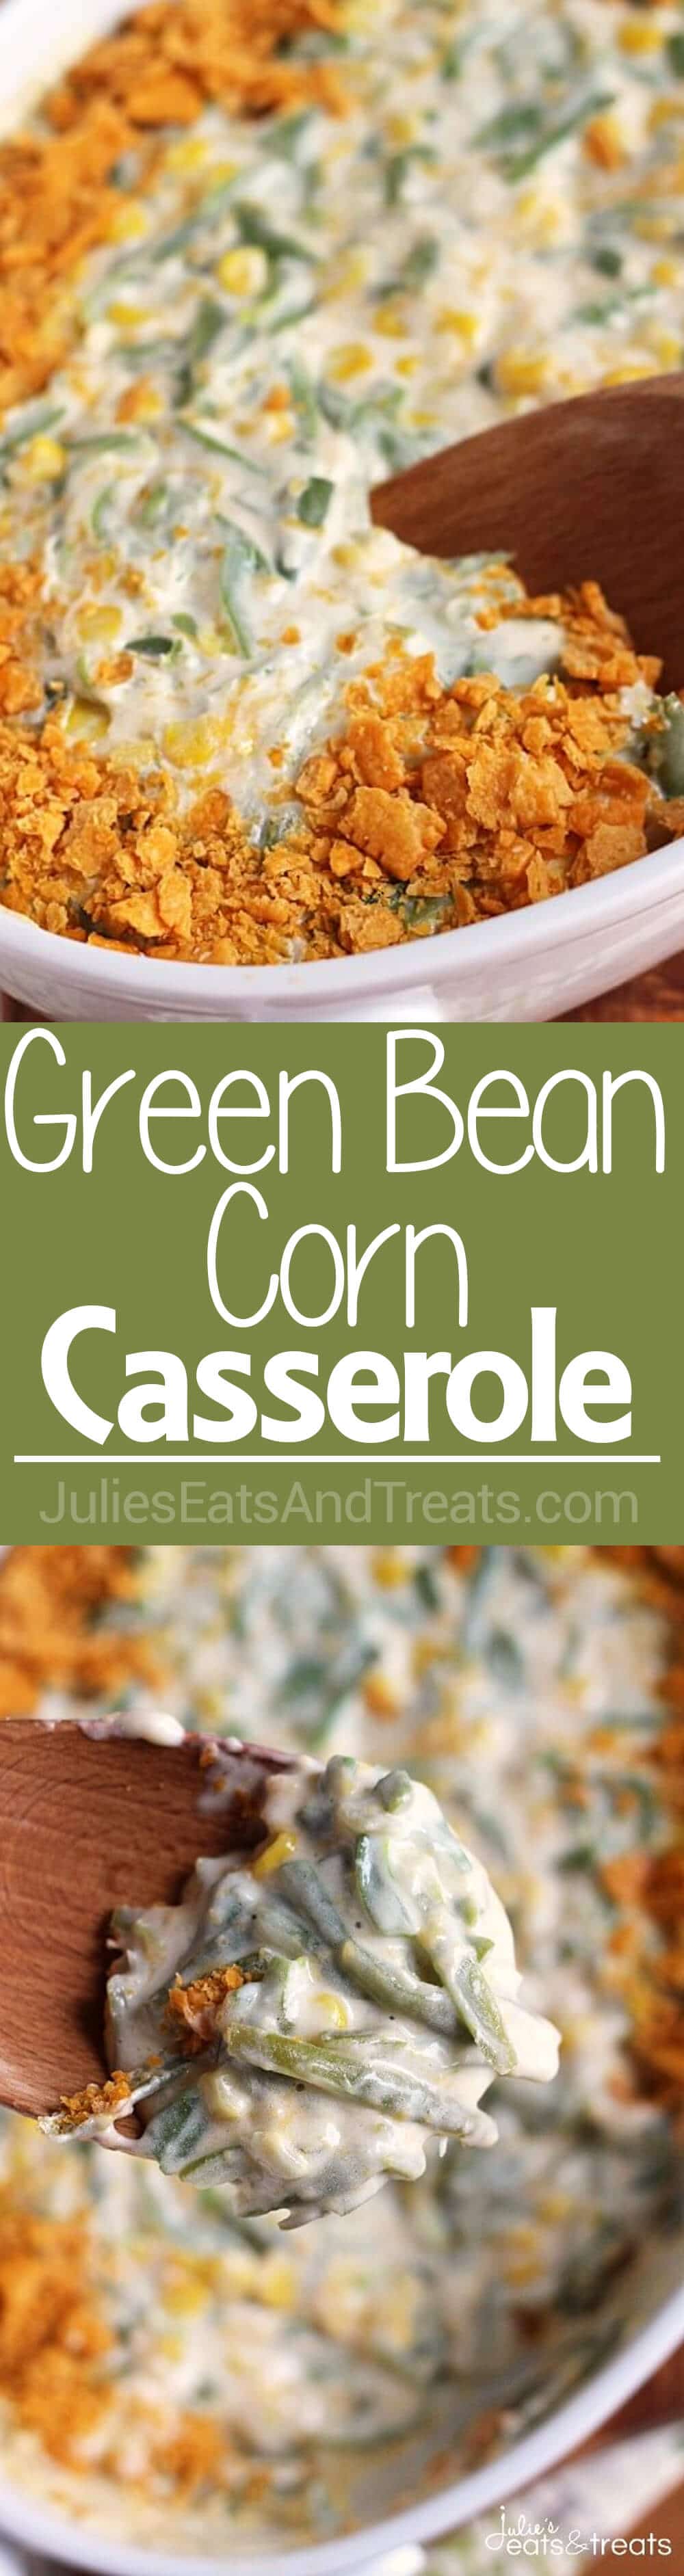 Green Bean Corn Casserole - Julie's Eats & Treats